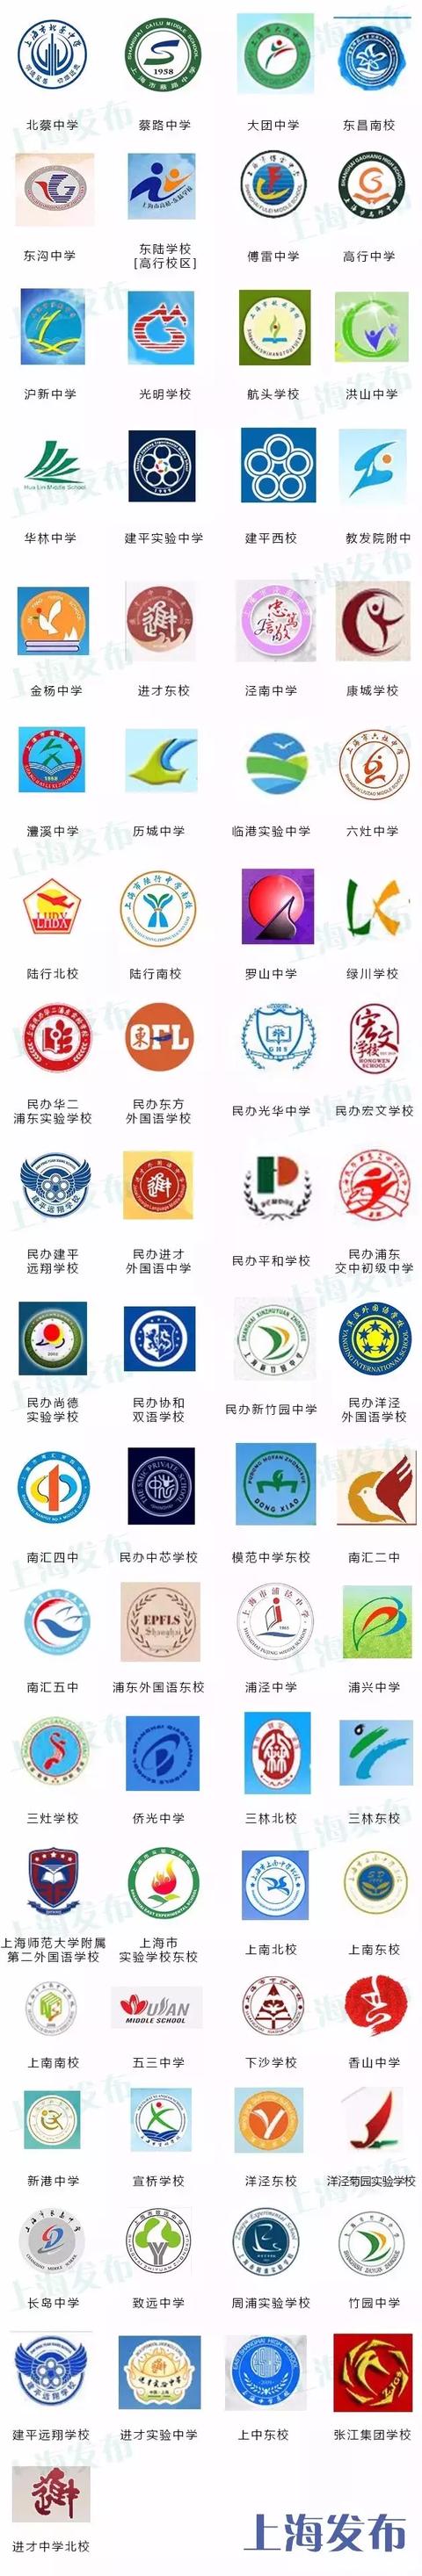 上海最全校徽上海383所初中校徽长啥样快来找找你的学校